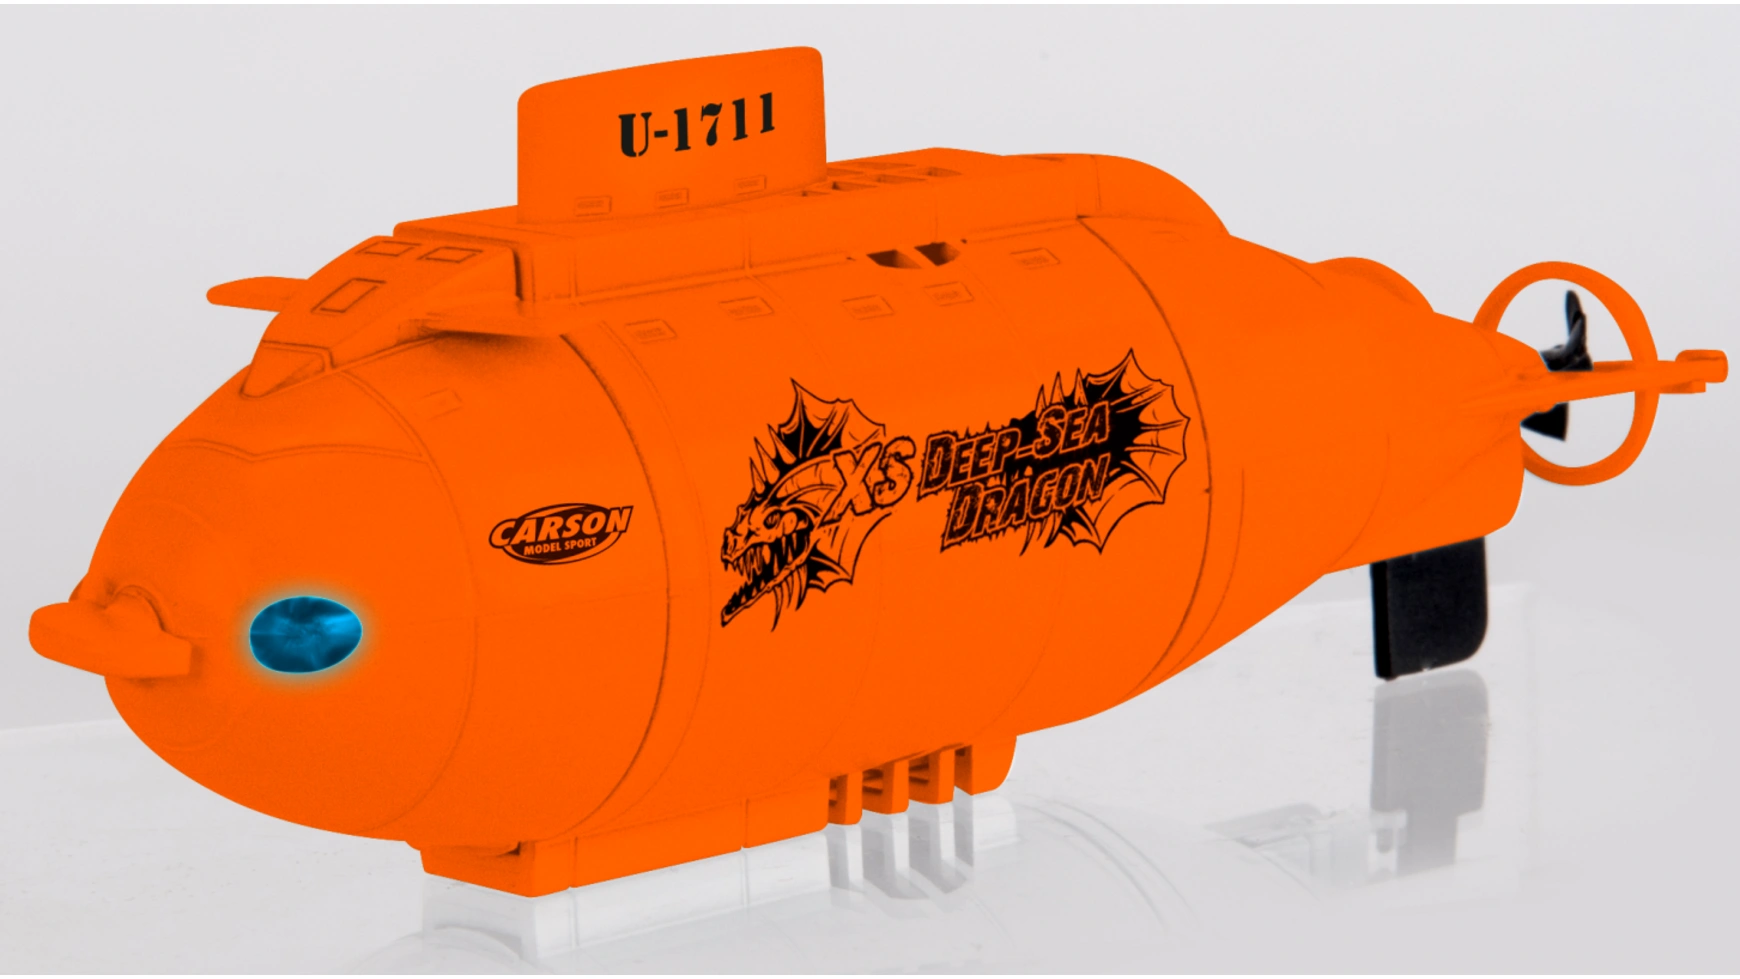 Carson Радиоуправляемая подводная лодка XS Deep Sea Dragon 100% RTR аппликация уроки творчества подводная лодка